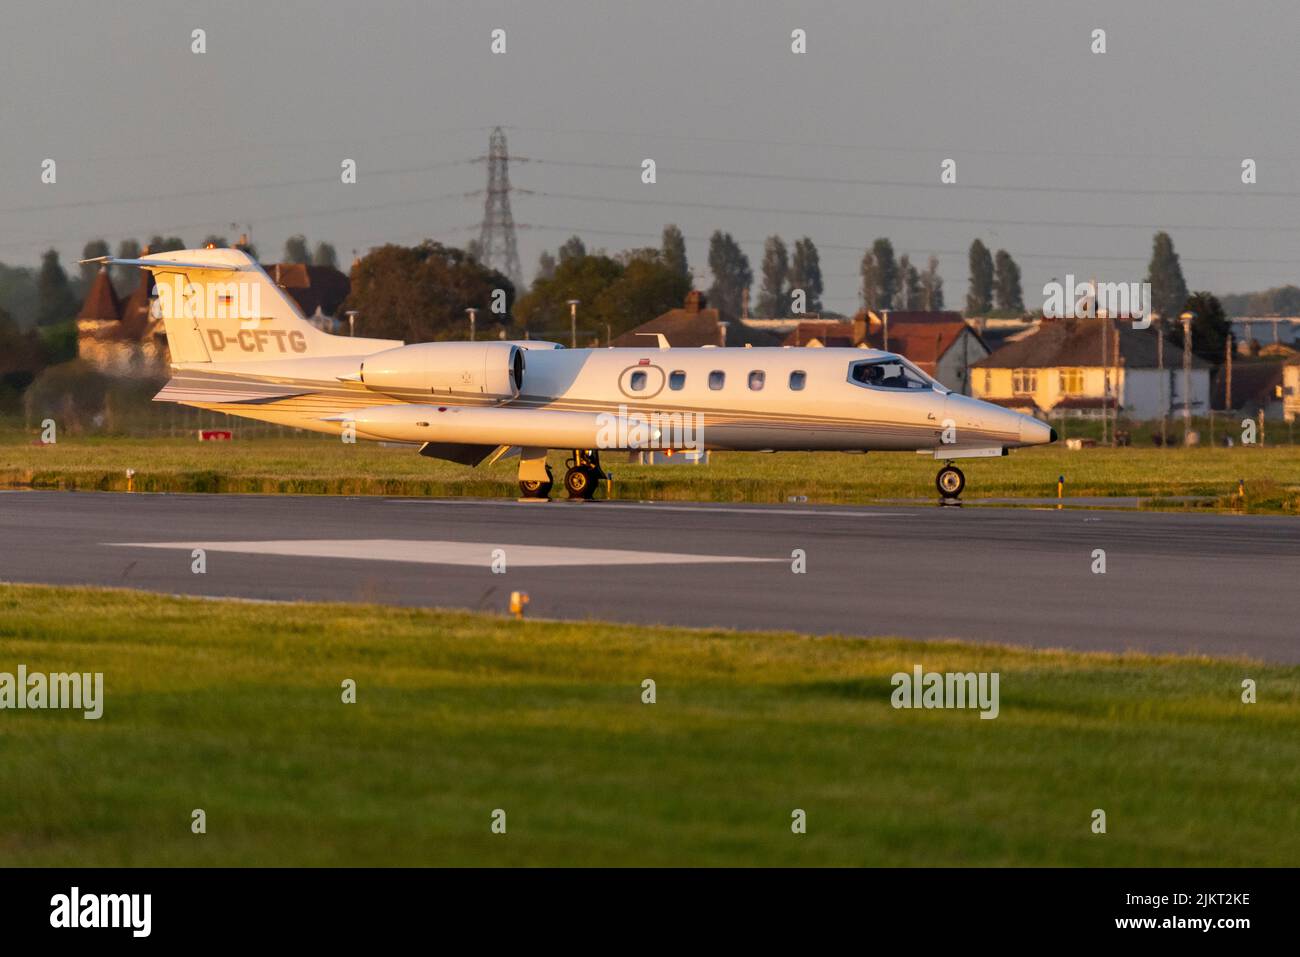 Gates Learjet 35A avión privado D-CFTG de Quick Air Jet Charter GmbH después de aterrizar por la noche en el aeropuerto de Londres Southend, Essex, Reino Unido. Resplandor al atardecer Foto de stock